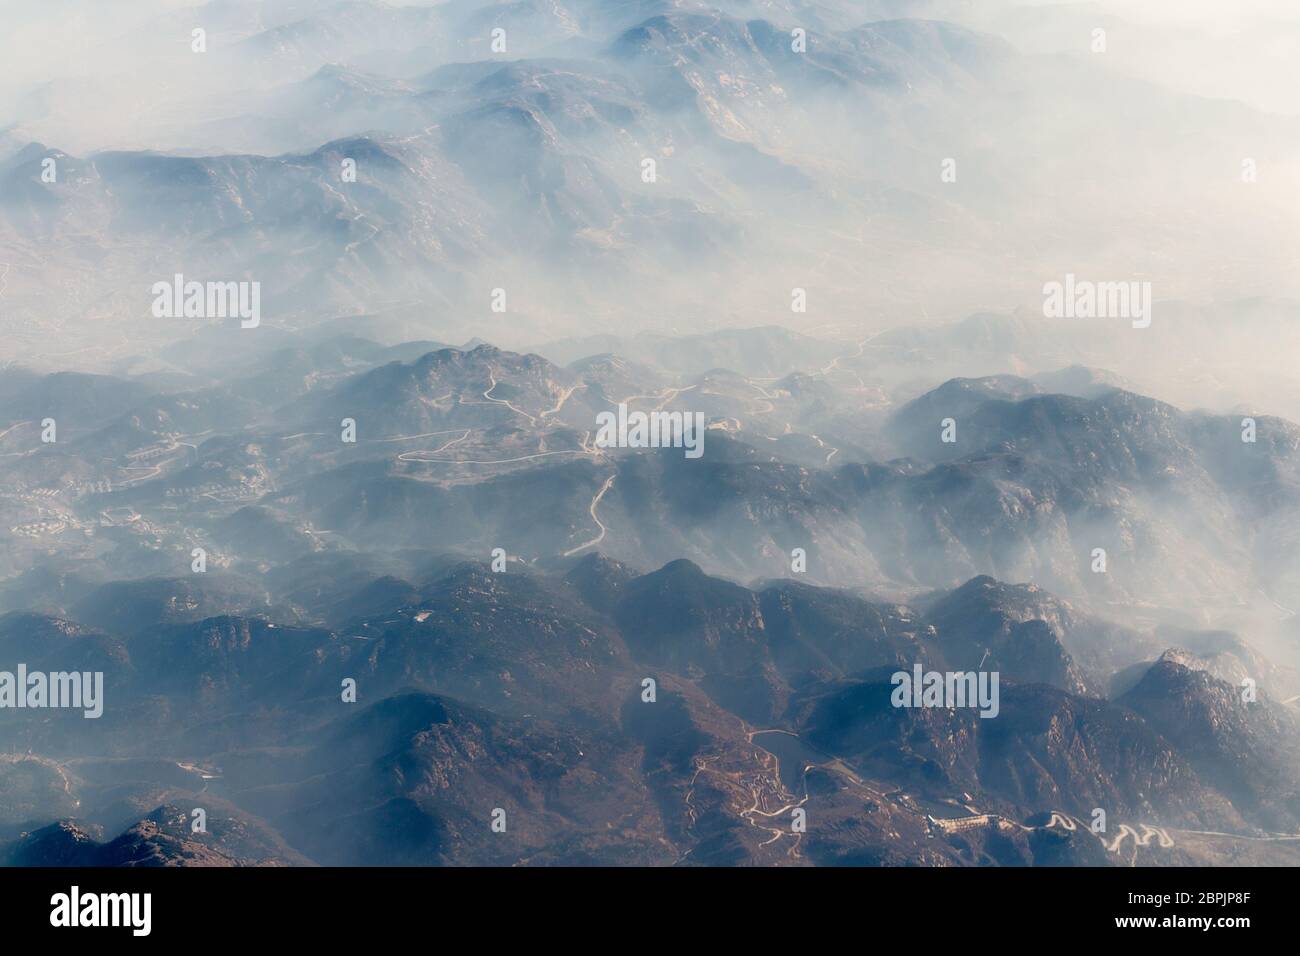 Paysage aérien montagne perdue dans le brouillard épais en Chine, oiseau vue paysage ressemble à un style de peinture de chinois Banque D'Images